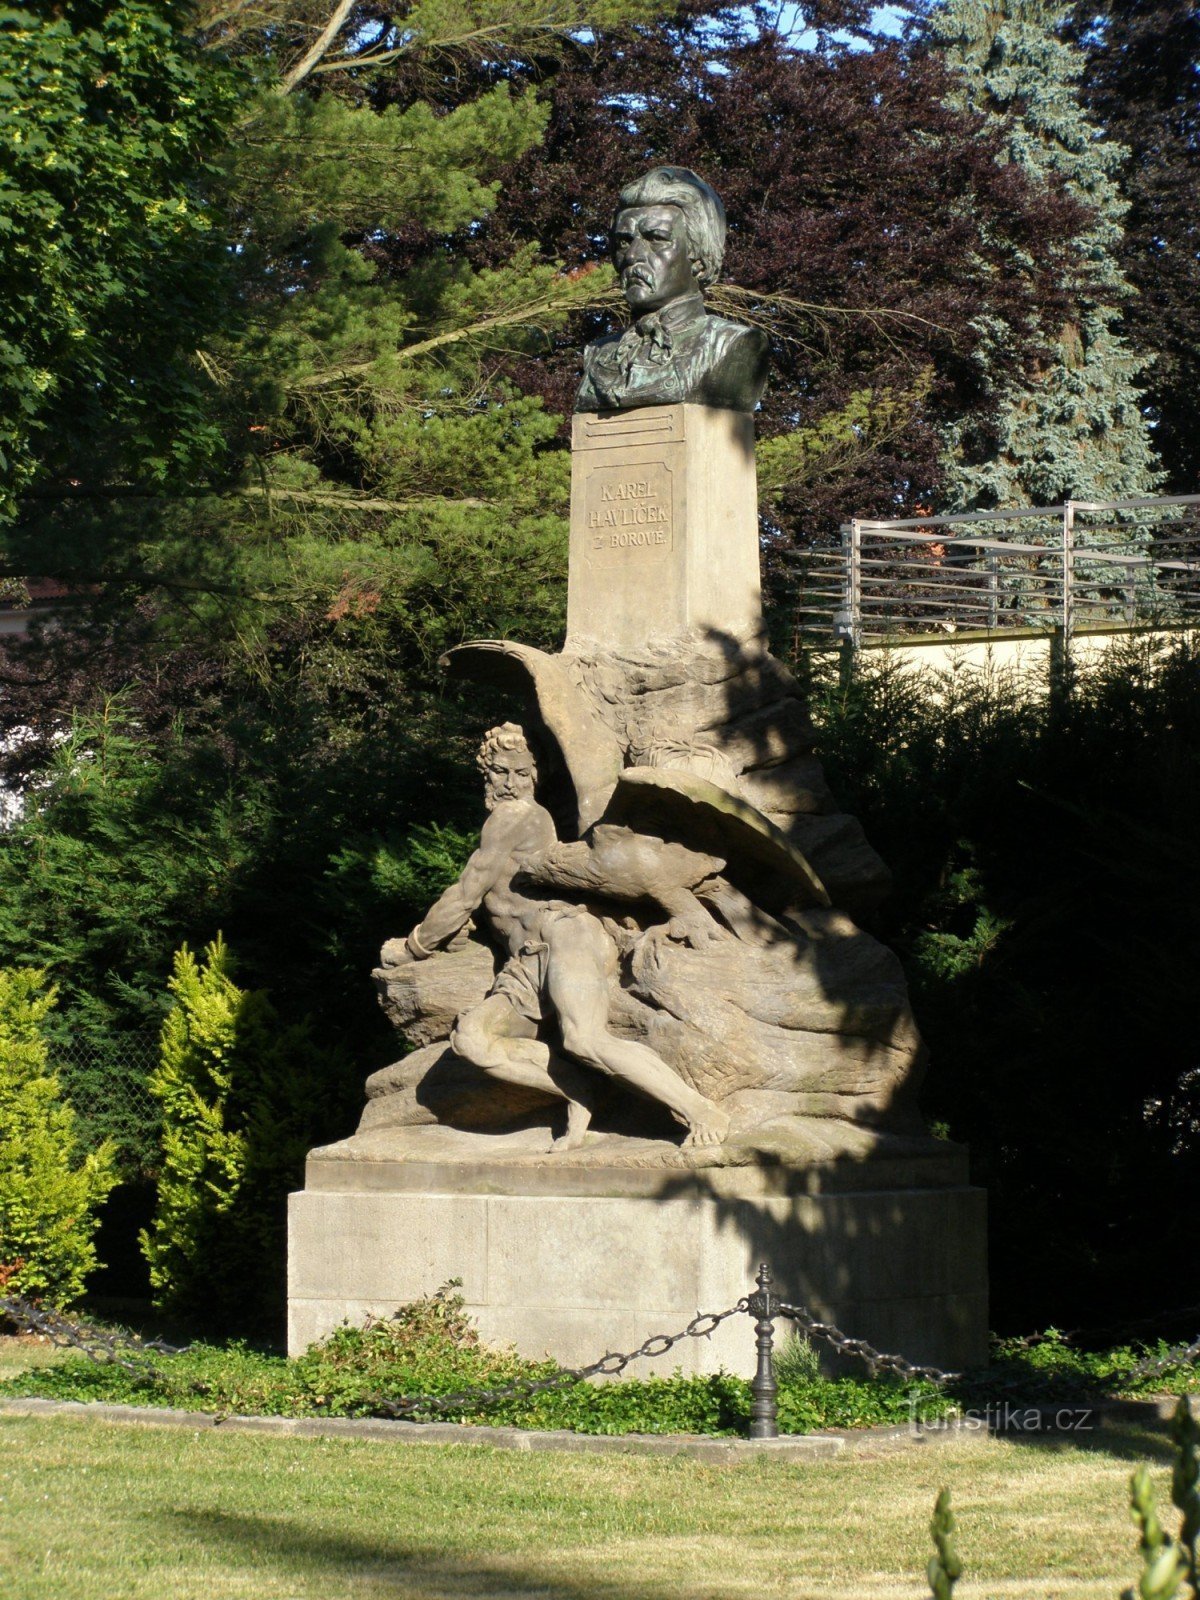 Jičín - 普罗米修斯雕像和 KHBorovsky 半身像